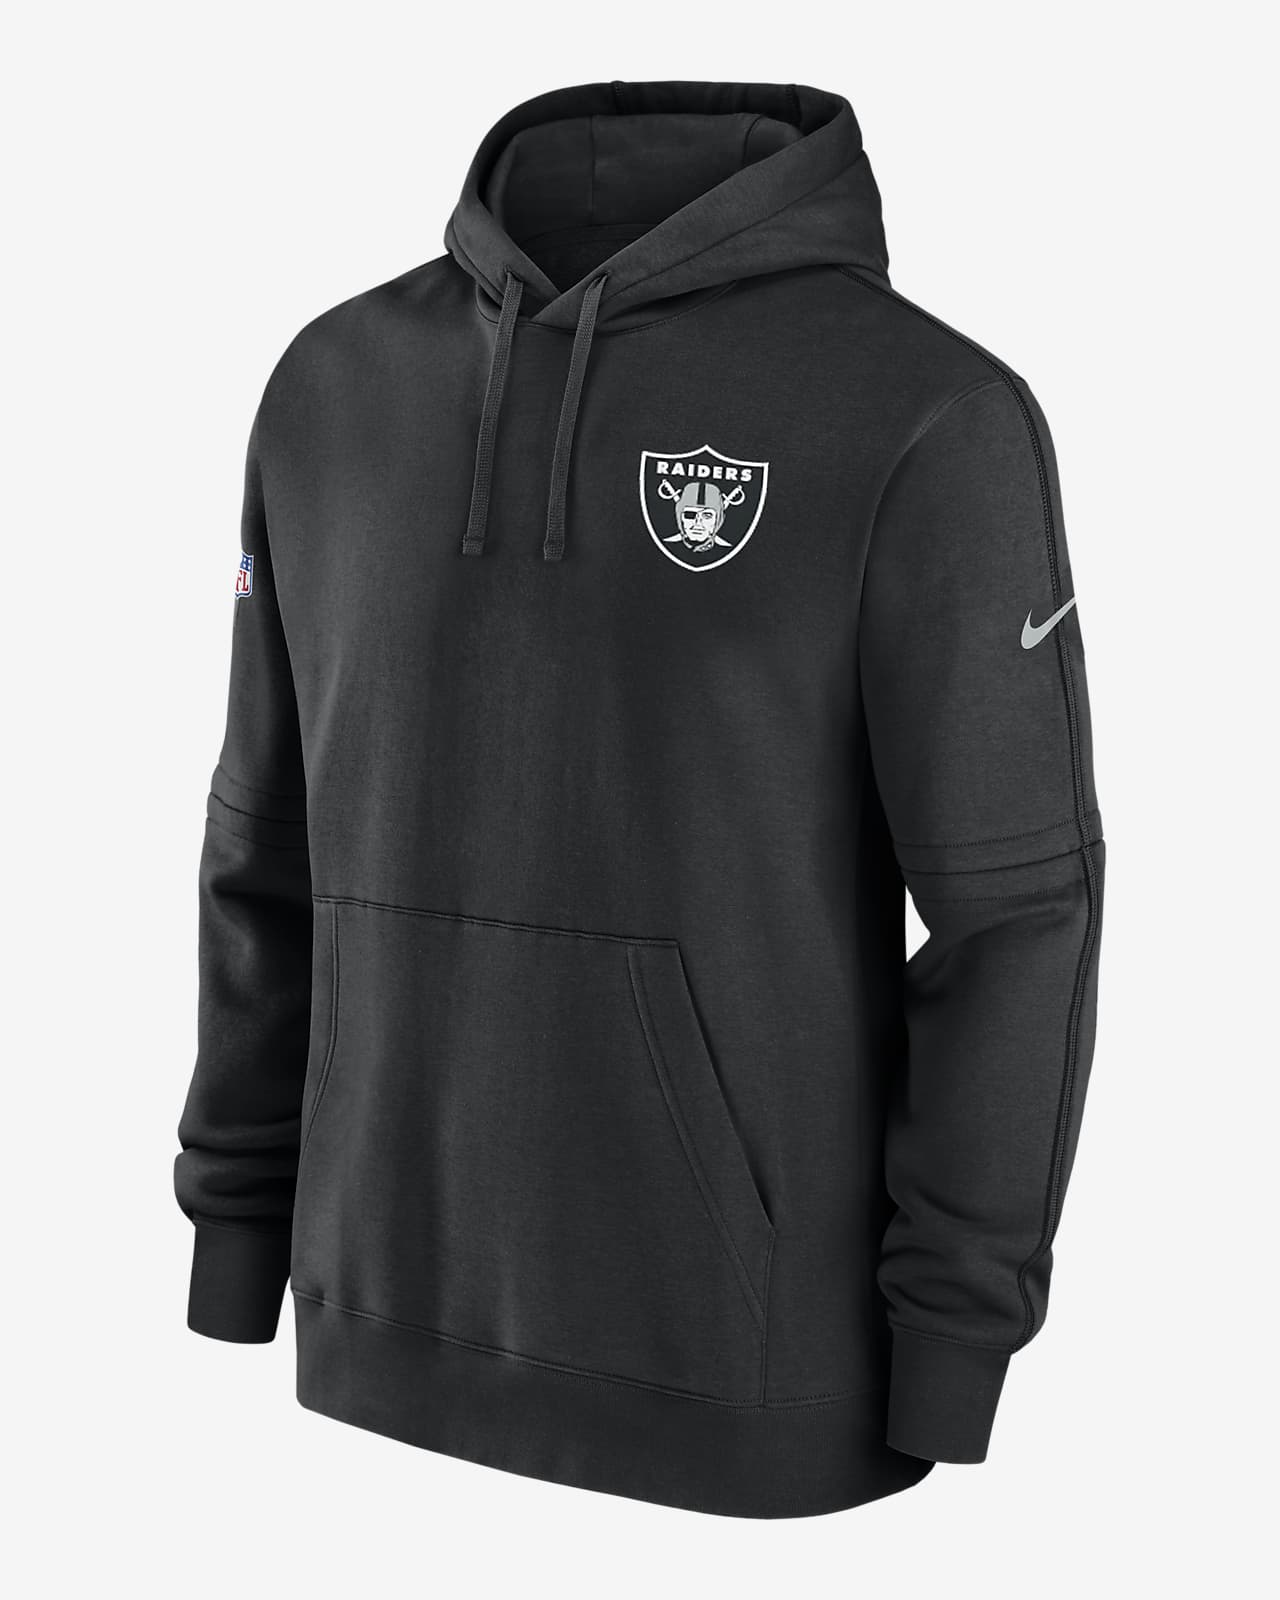 Las Vegas Raiders Sideline Club Nike NFL férfi kapucnis pulóver